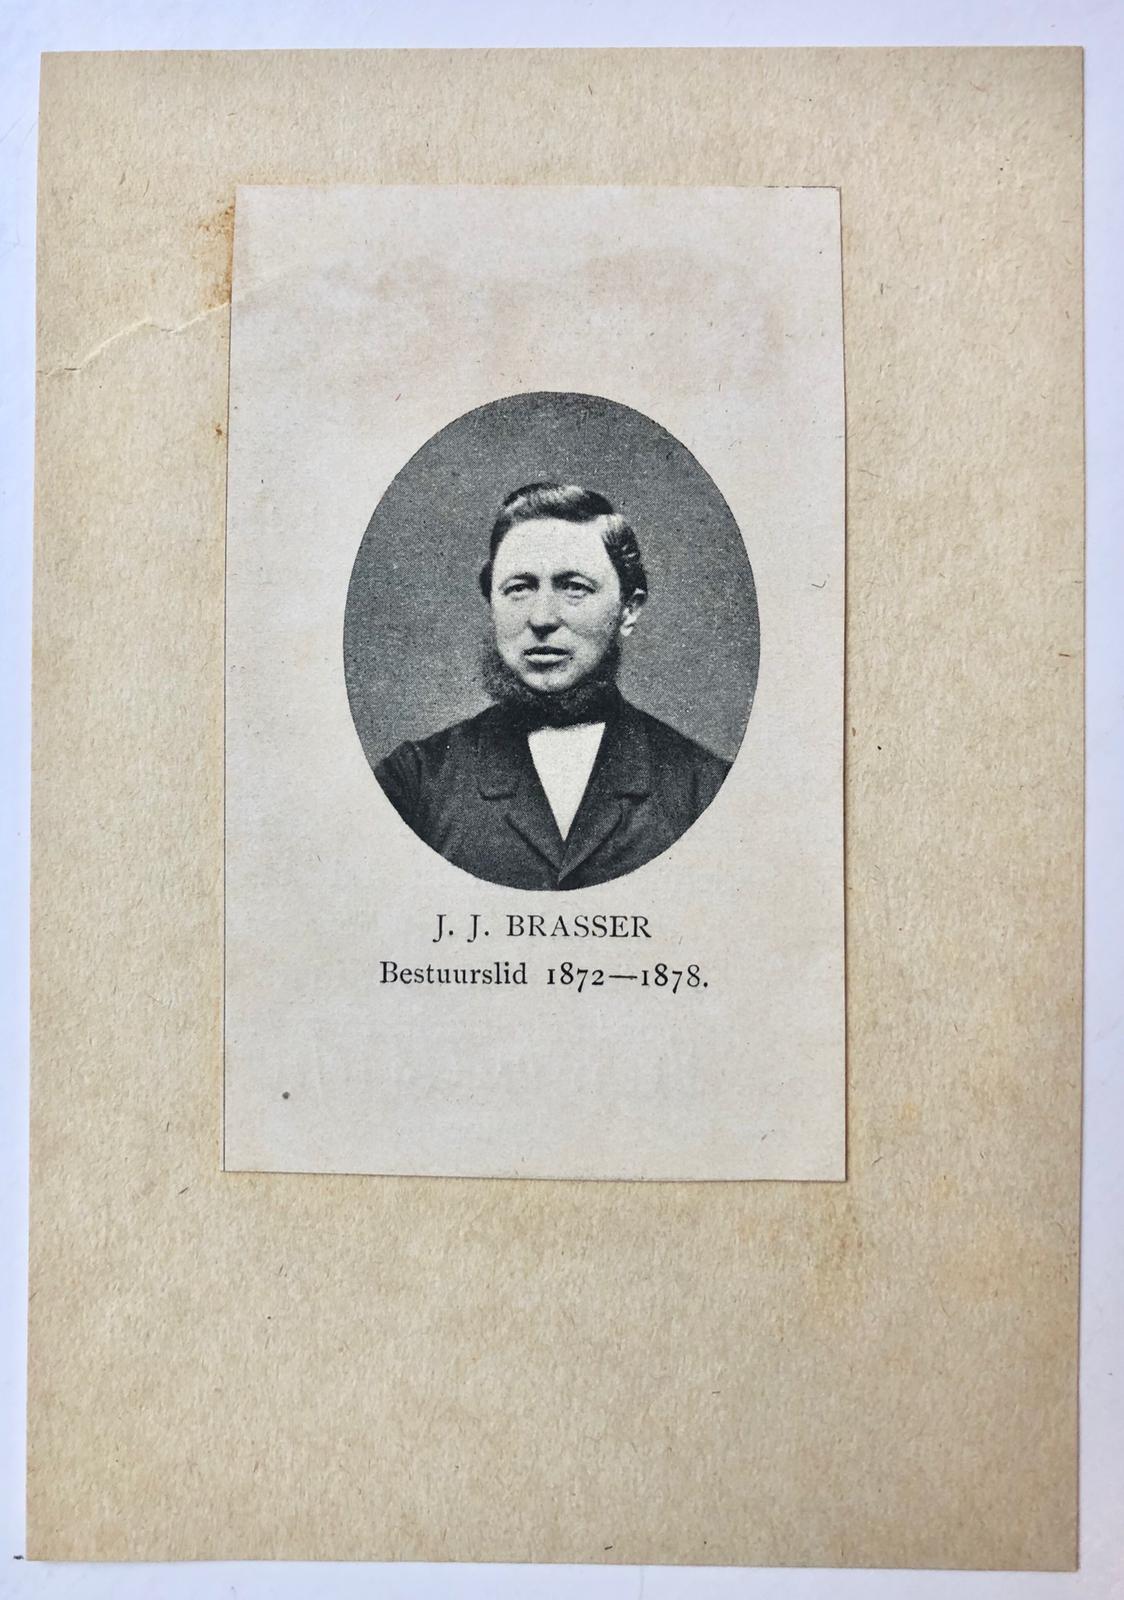 [Manuscript(s), 1926] Twee brieven met bijlagen van J.P. Brasser te Breda, d.d. 1926, aan G. Halwasse, betr. de familie Brasser.